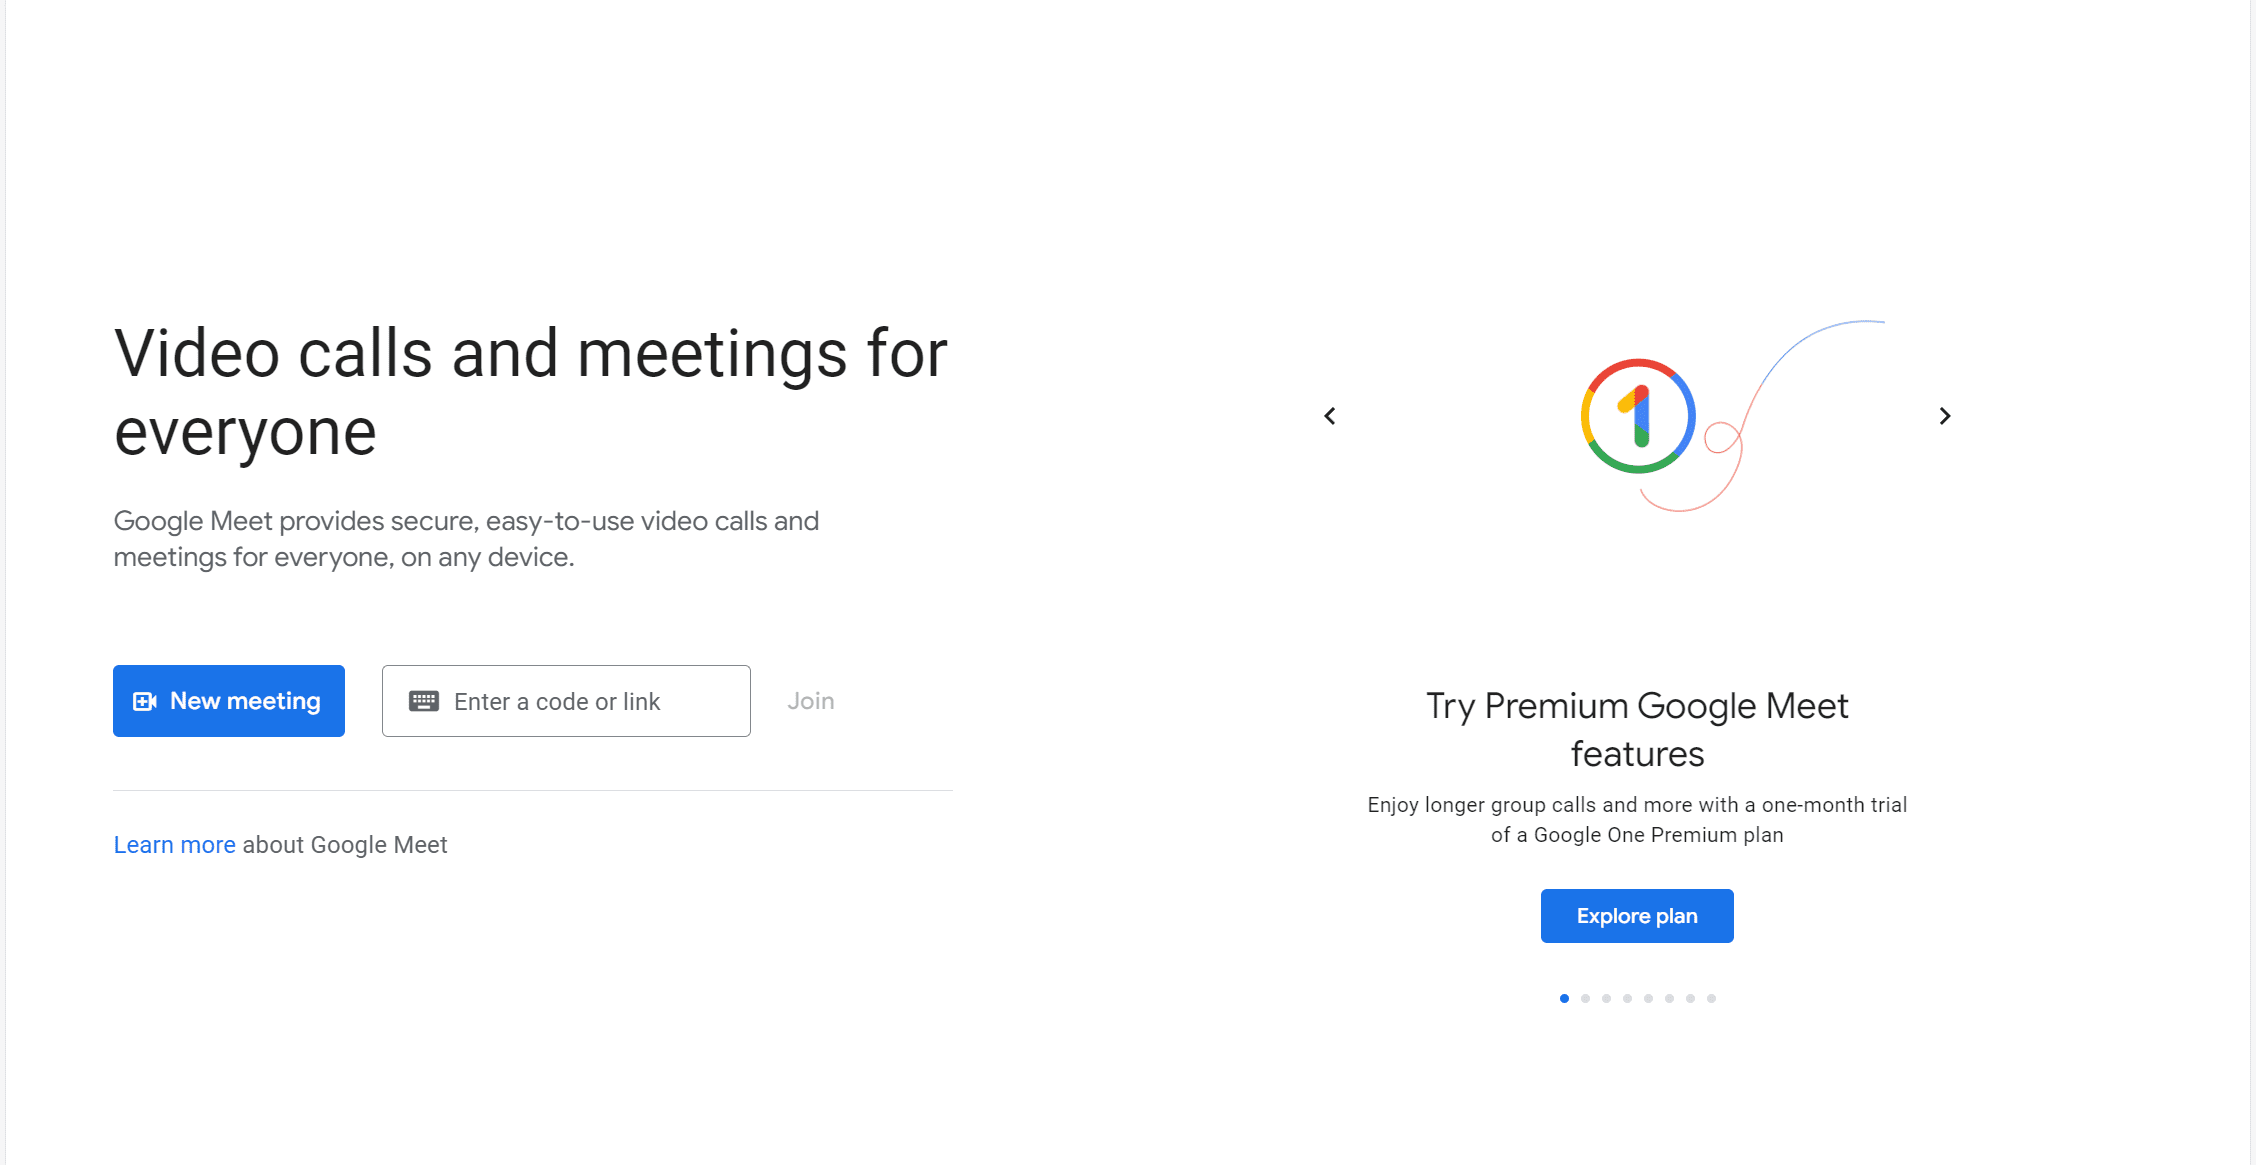 Google Meet Homepage